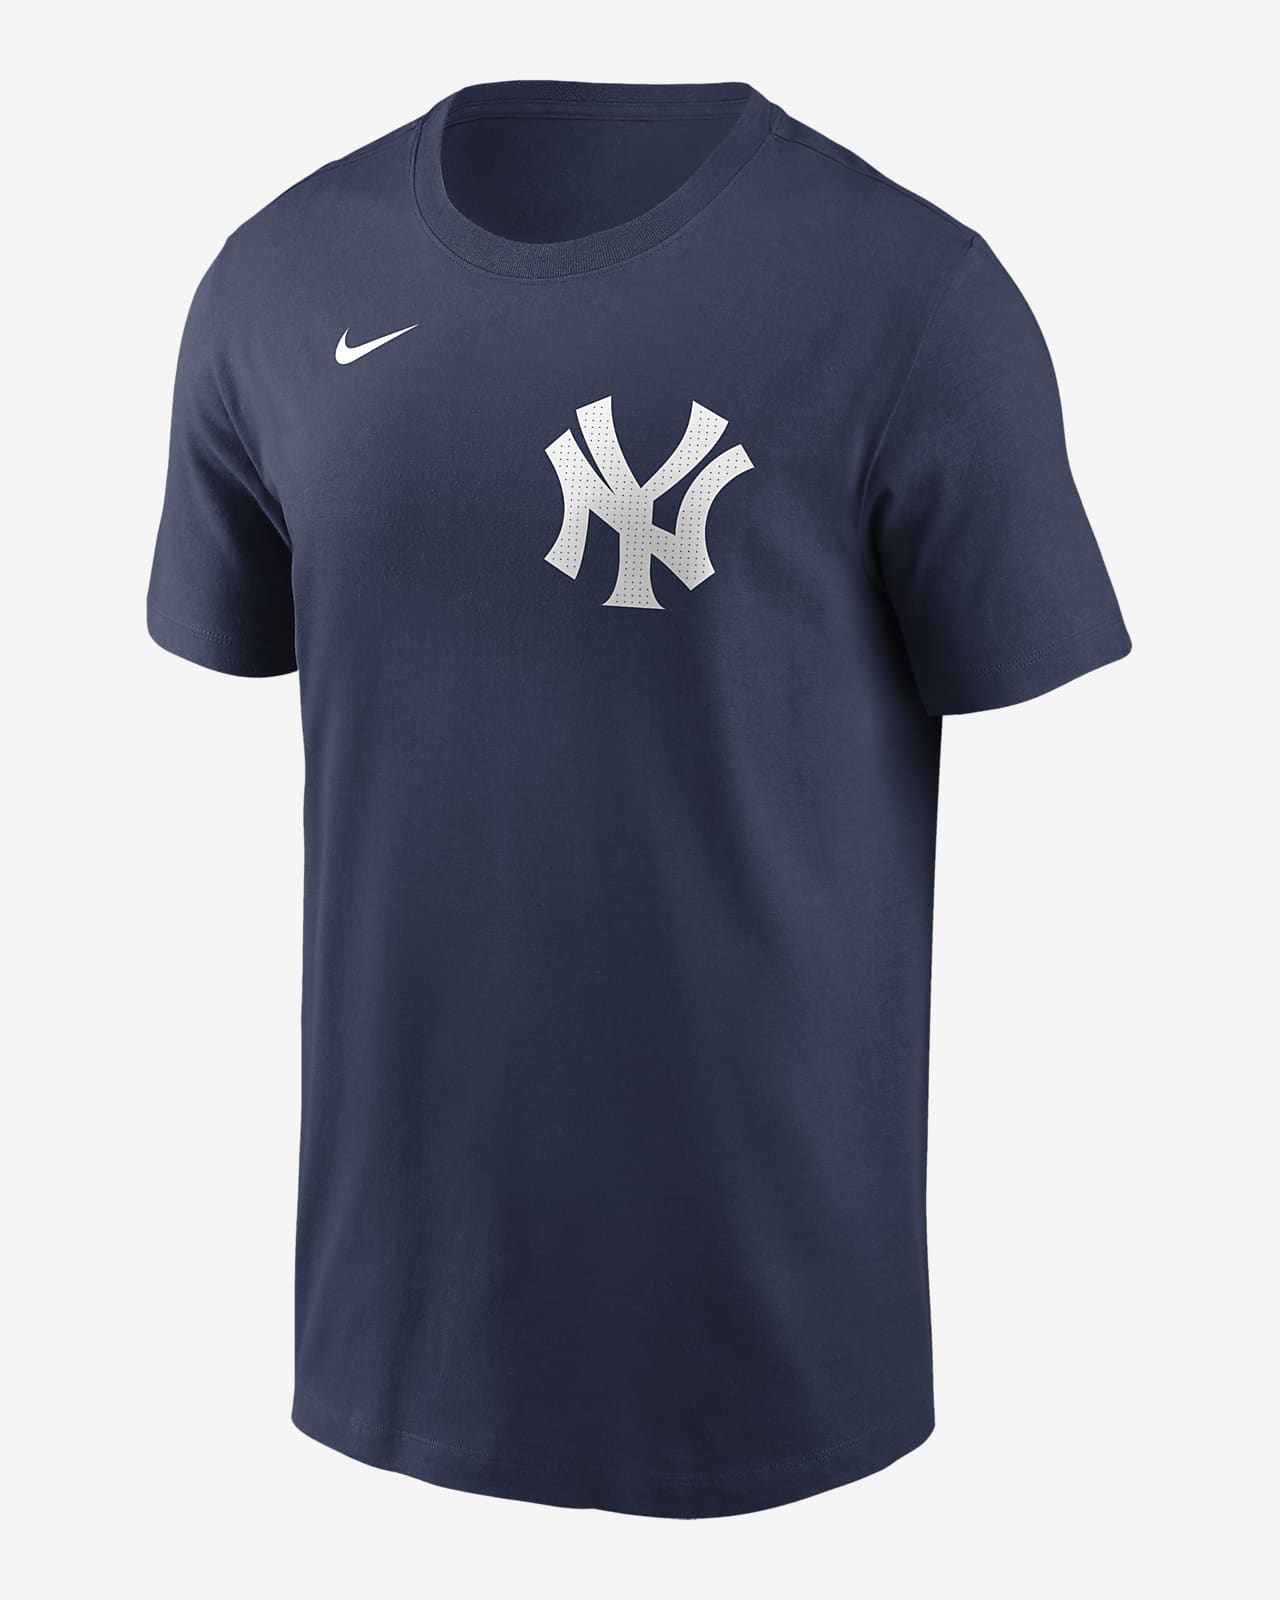 Gerrit Cole New York Yankees Fuse Men's Nike MLB T-Shirt